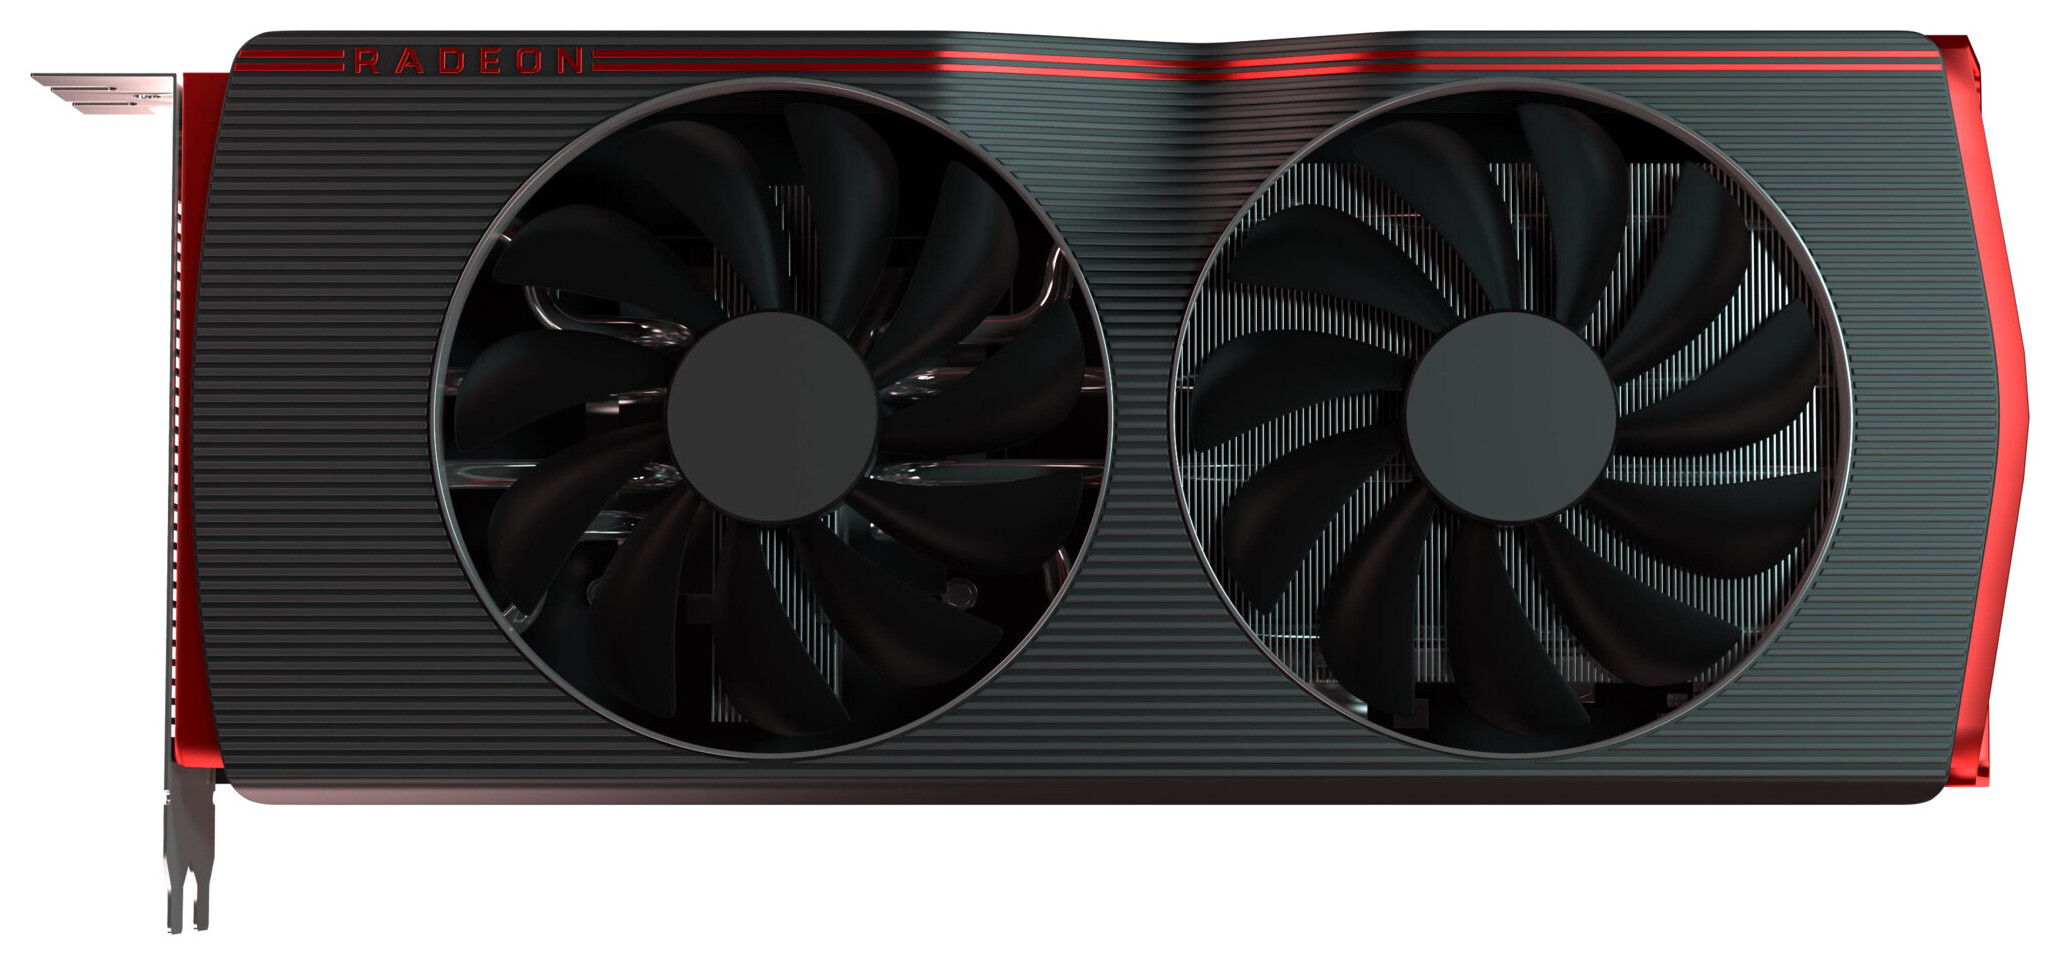 AMD Posts Radeon Software Adrenalin 20.1.3 | TechPowerUp Forums